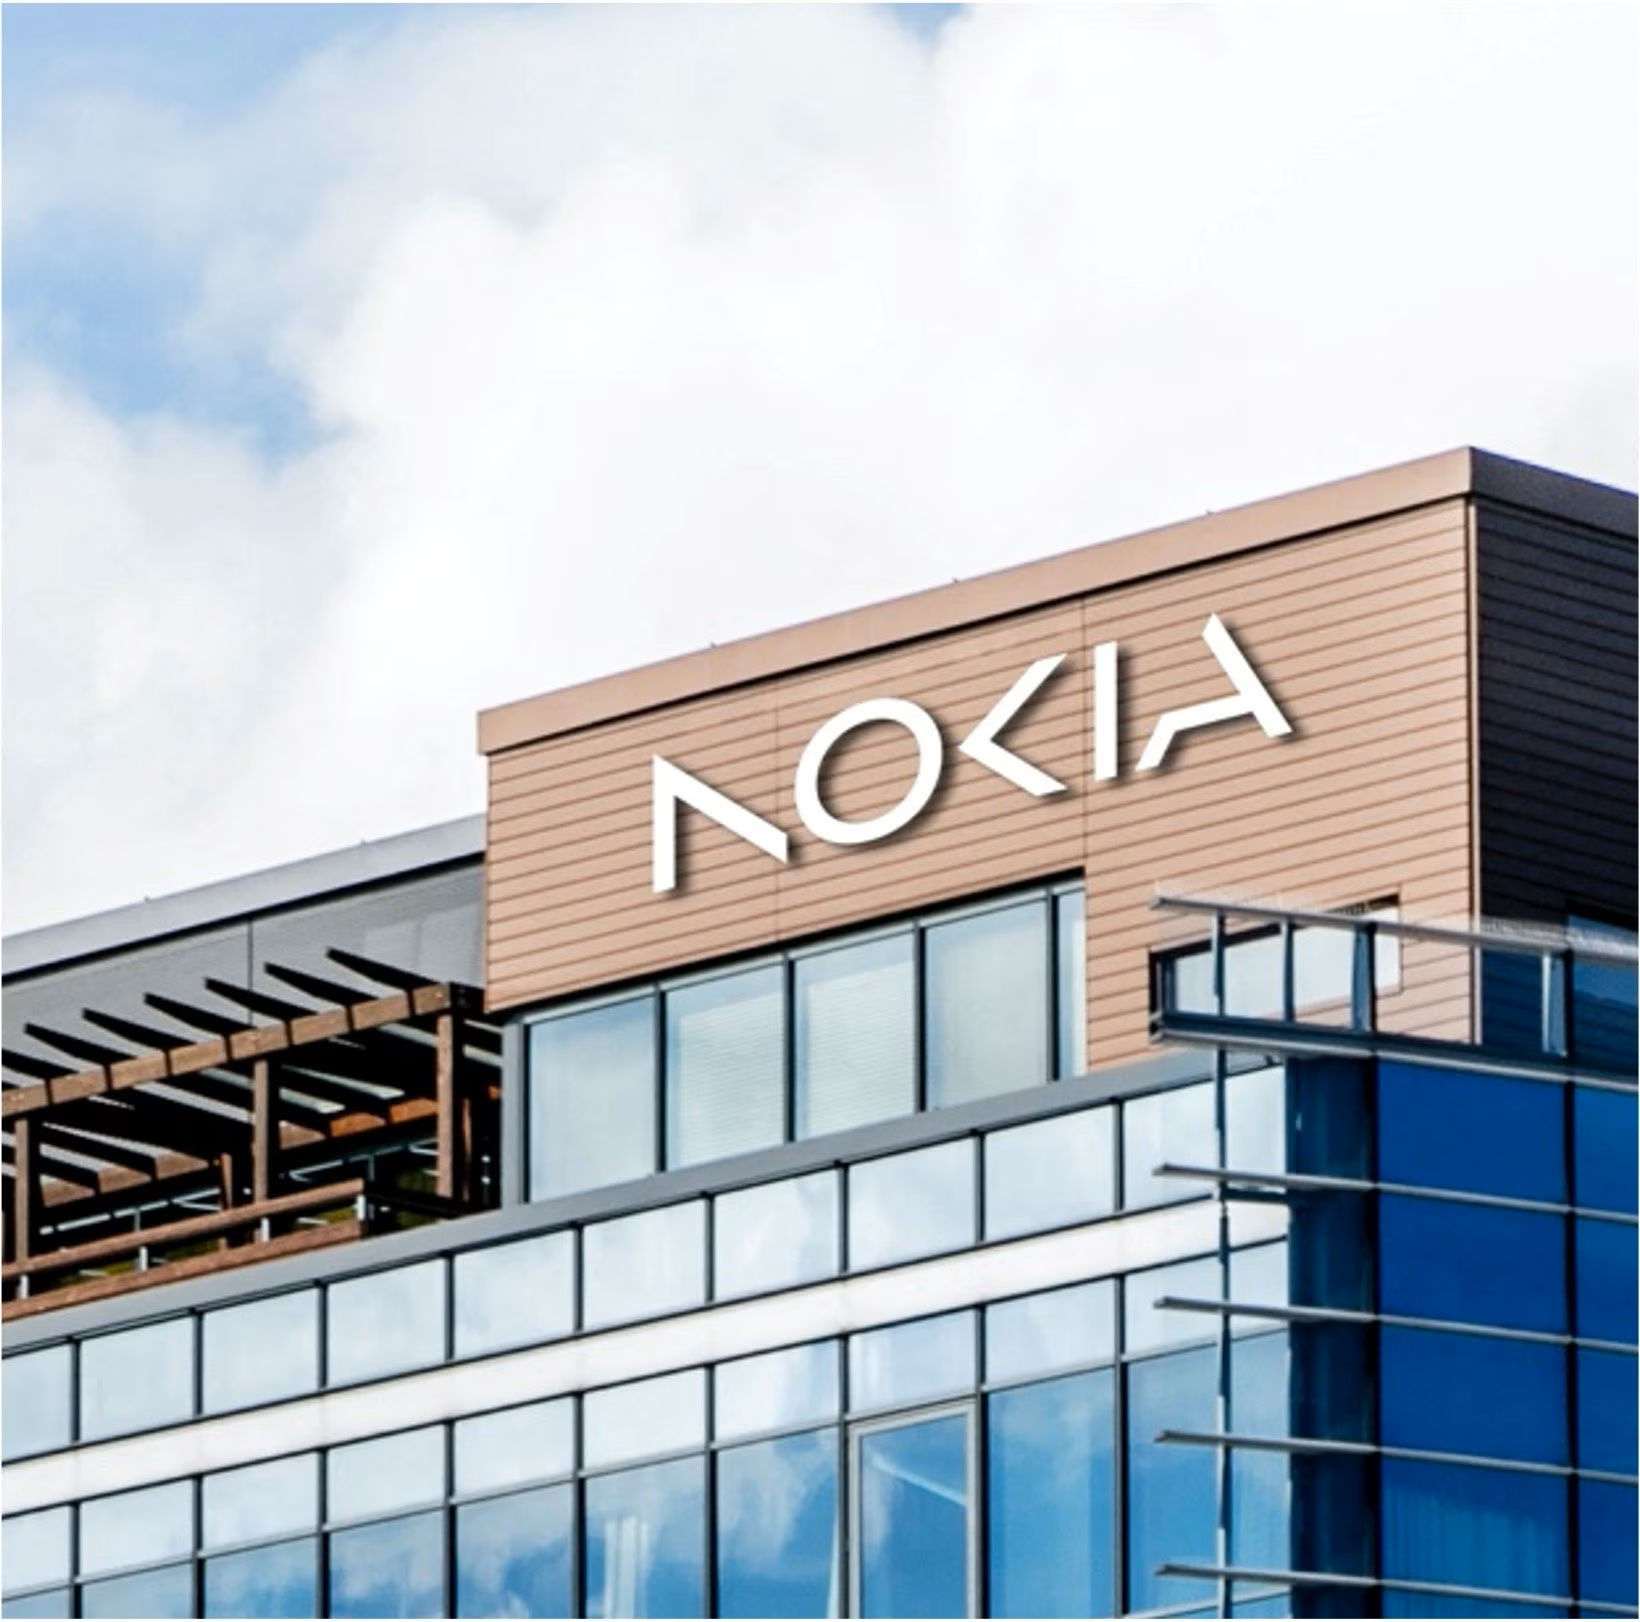 บริษัทแม่ Nokia เปลี่ยนโลโก้ใหม่สุดล้ำในรอบ 60 ปี หวังลบภาพแบรนด์มือถือ